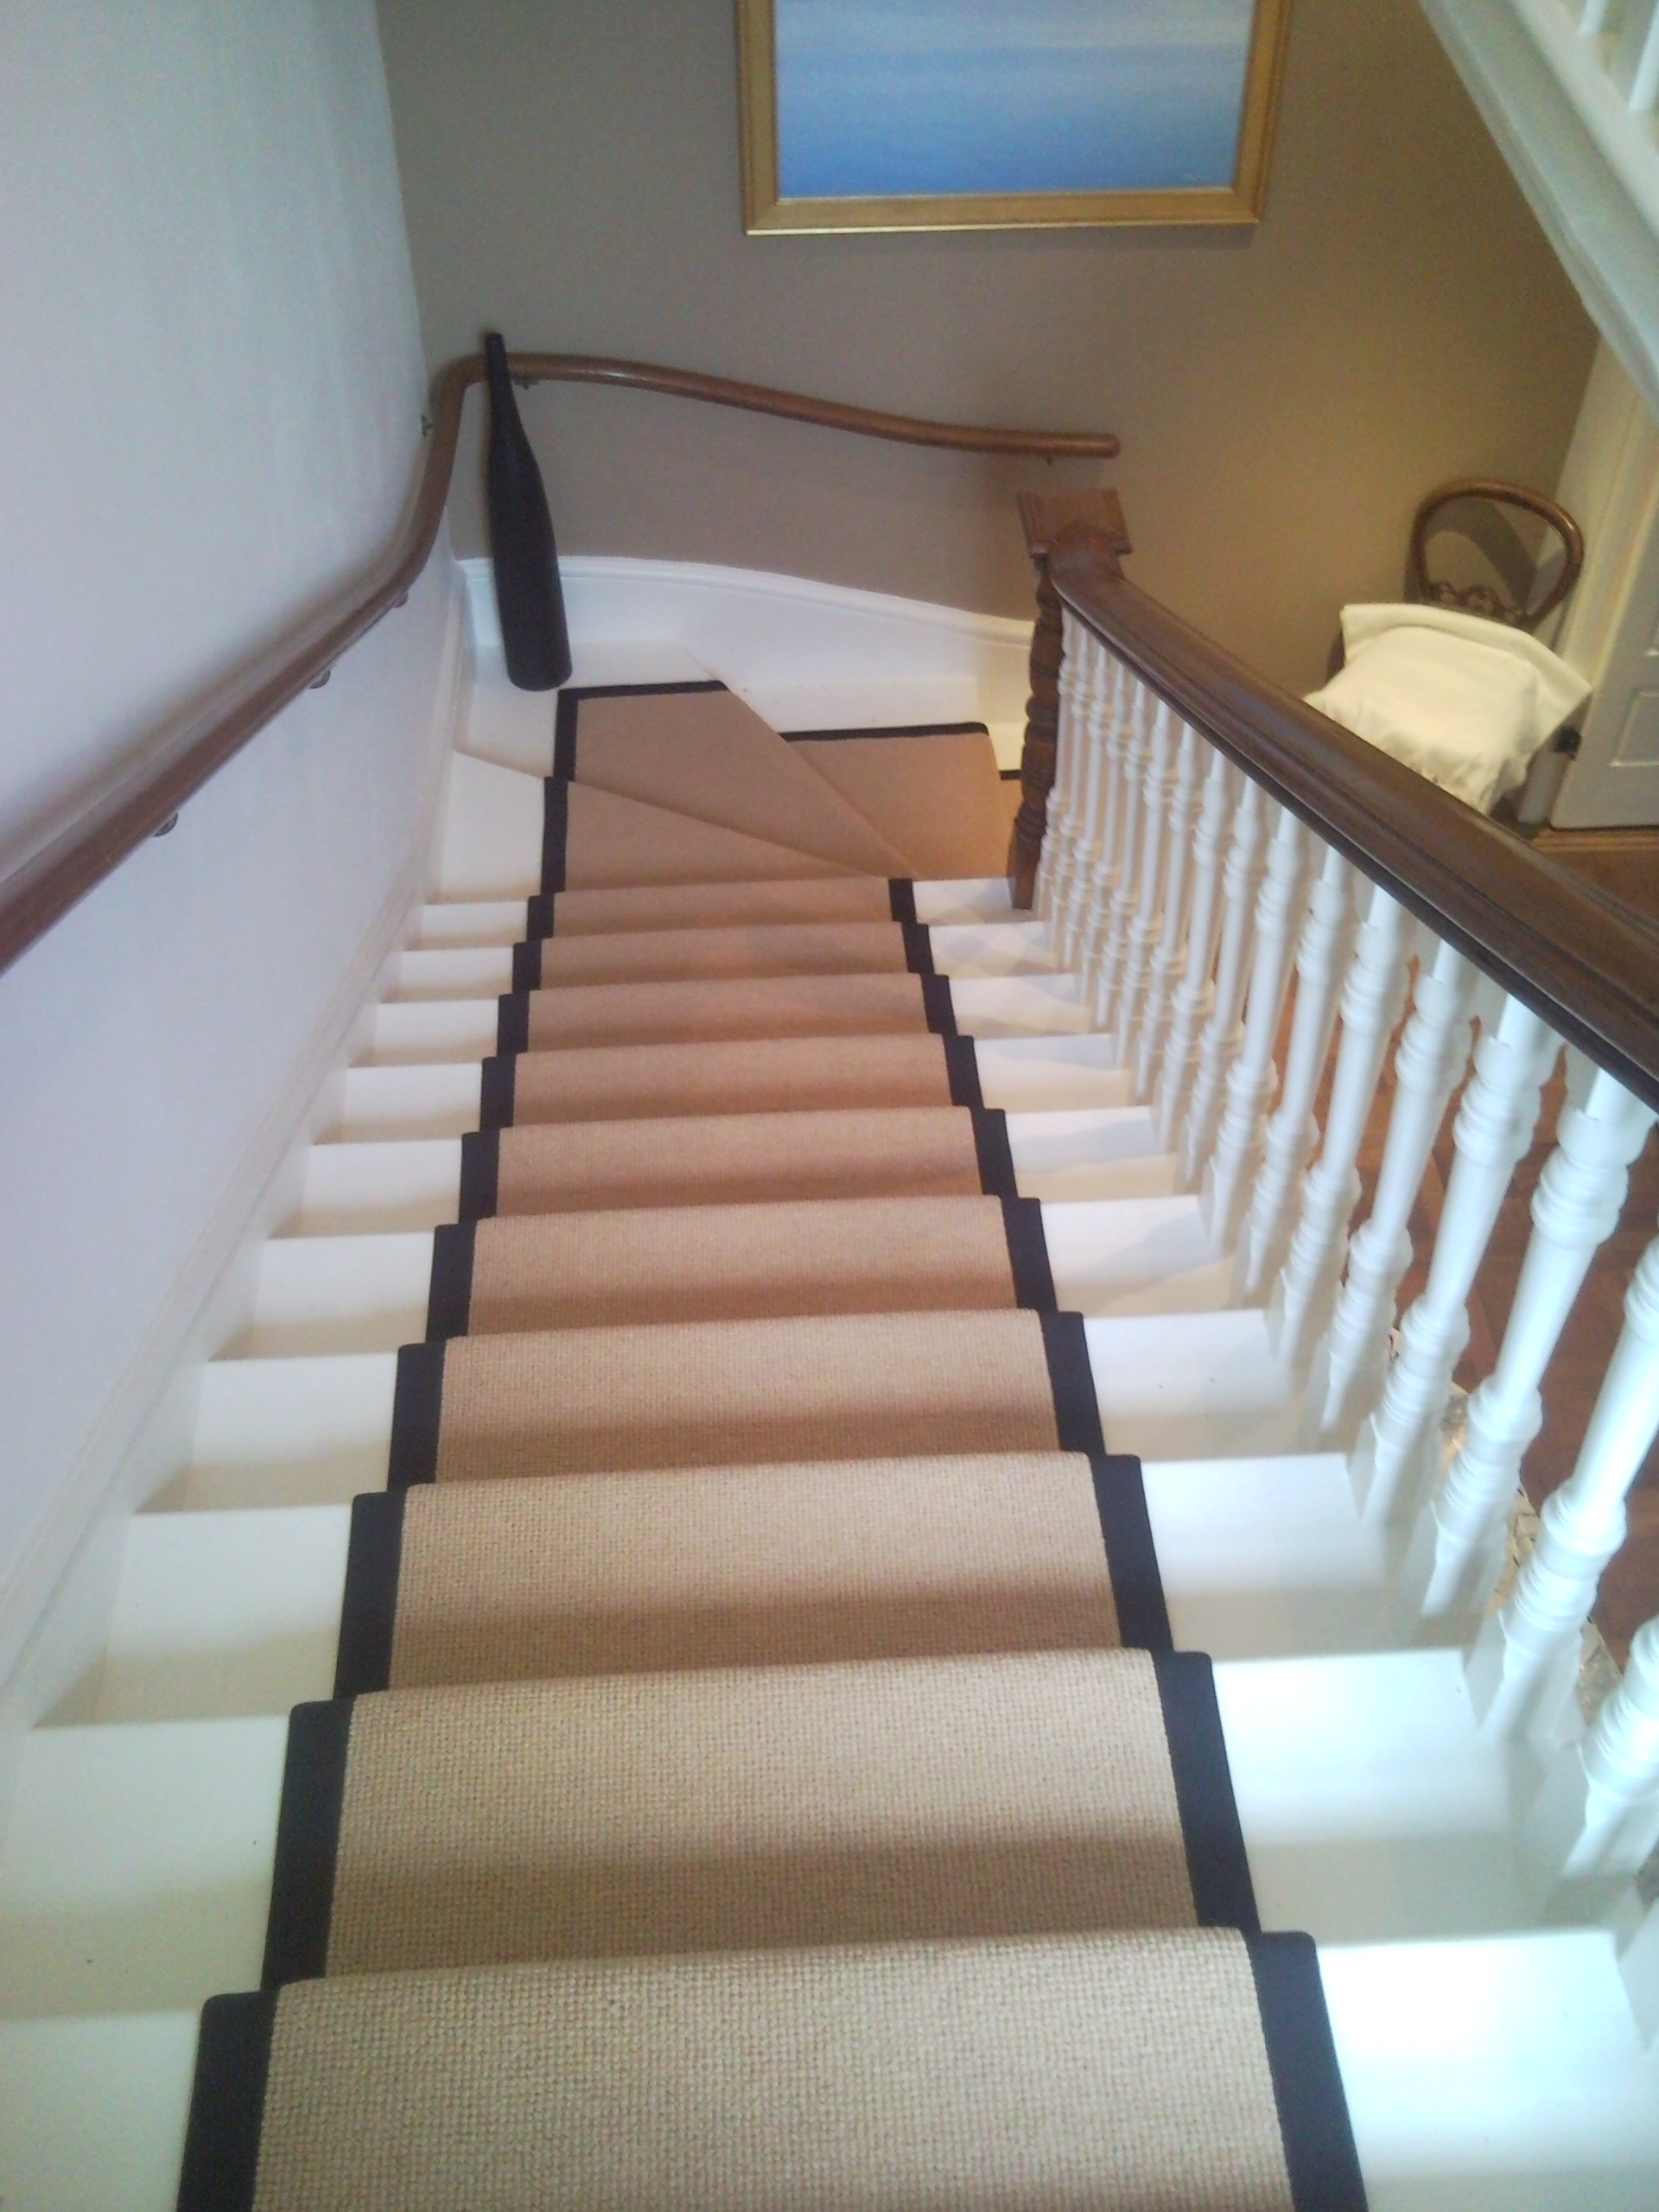 carpet runner for stairs over carpet photo - 4